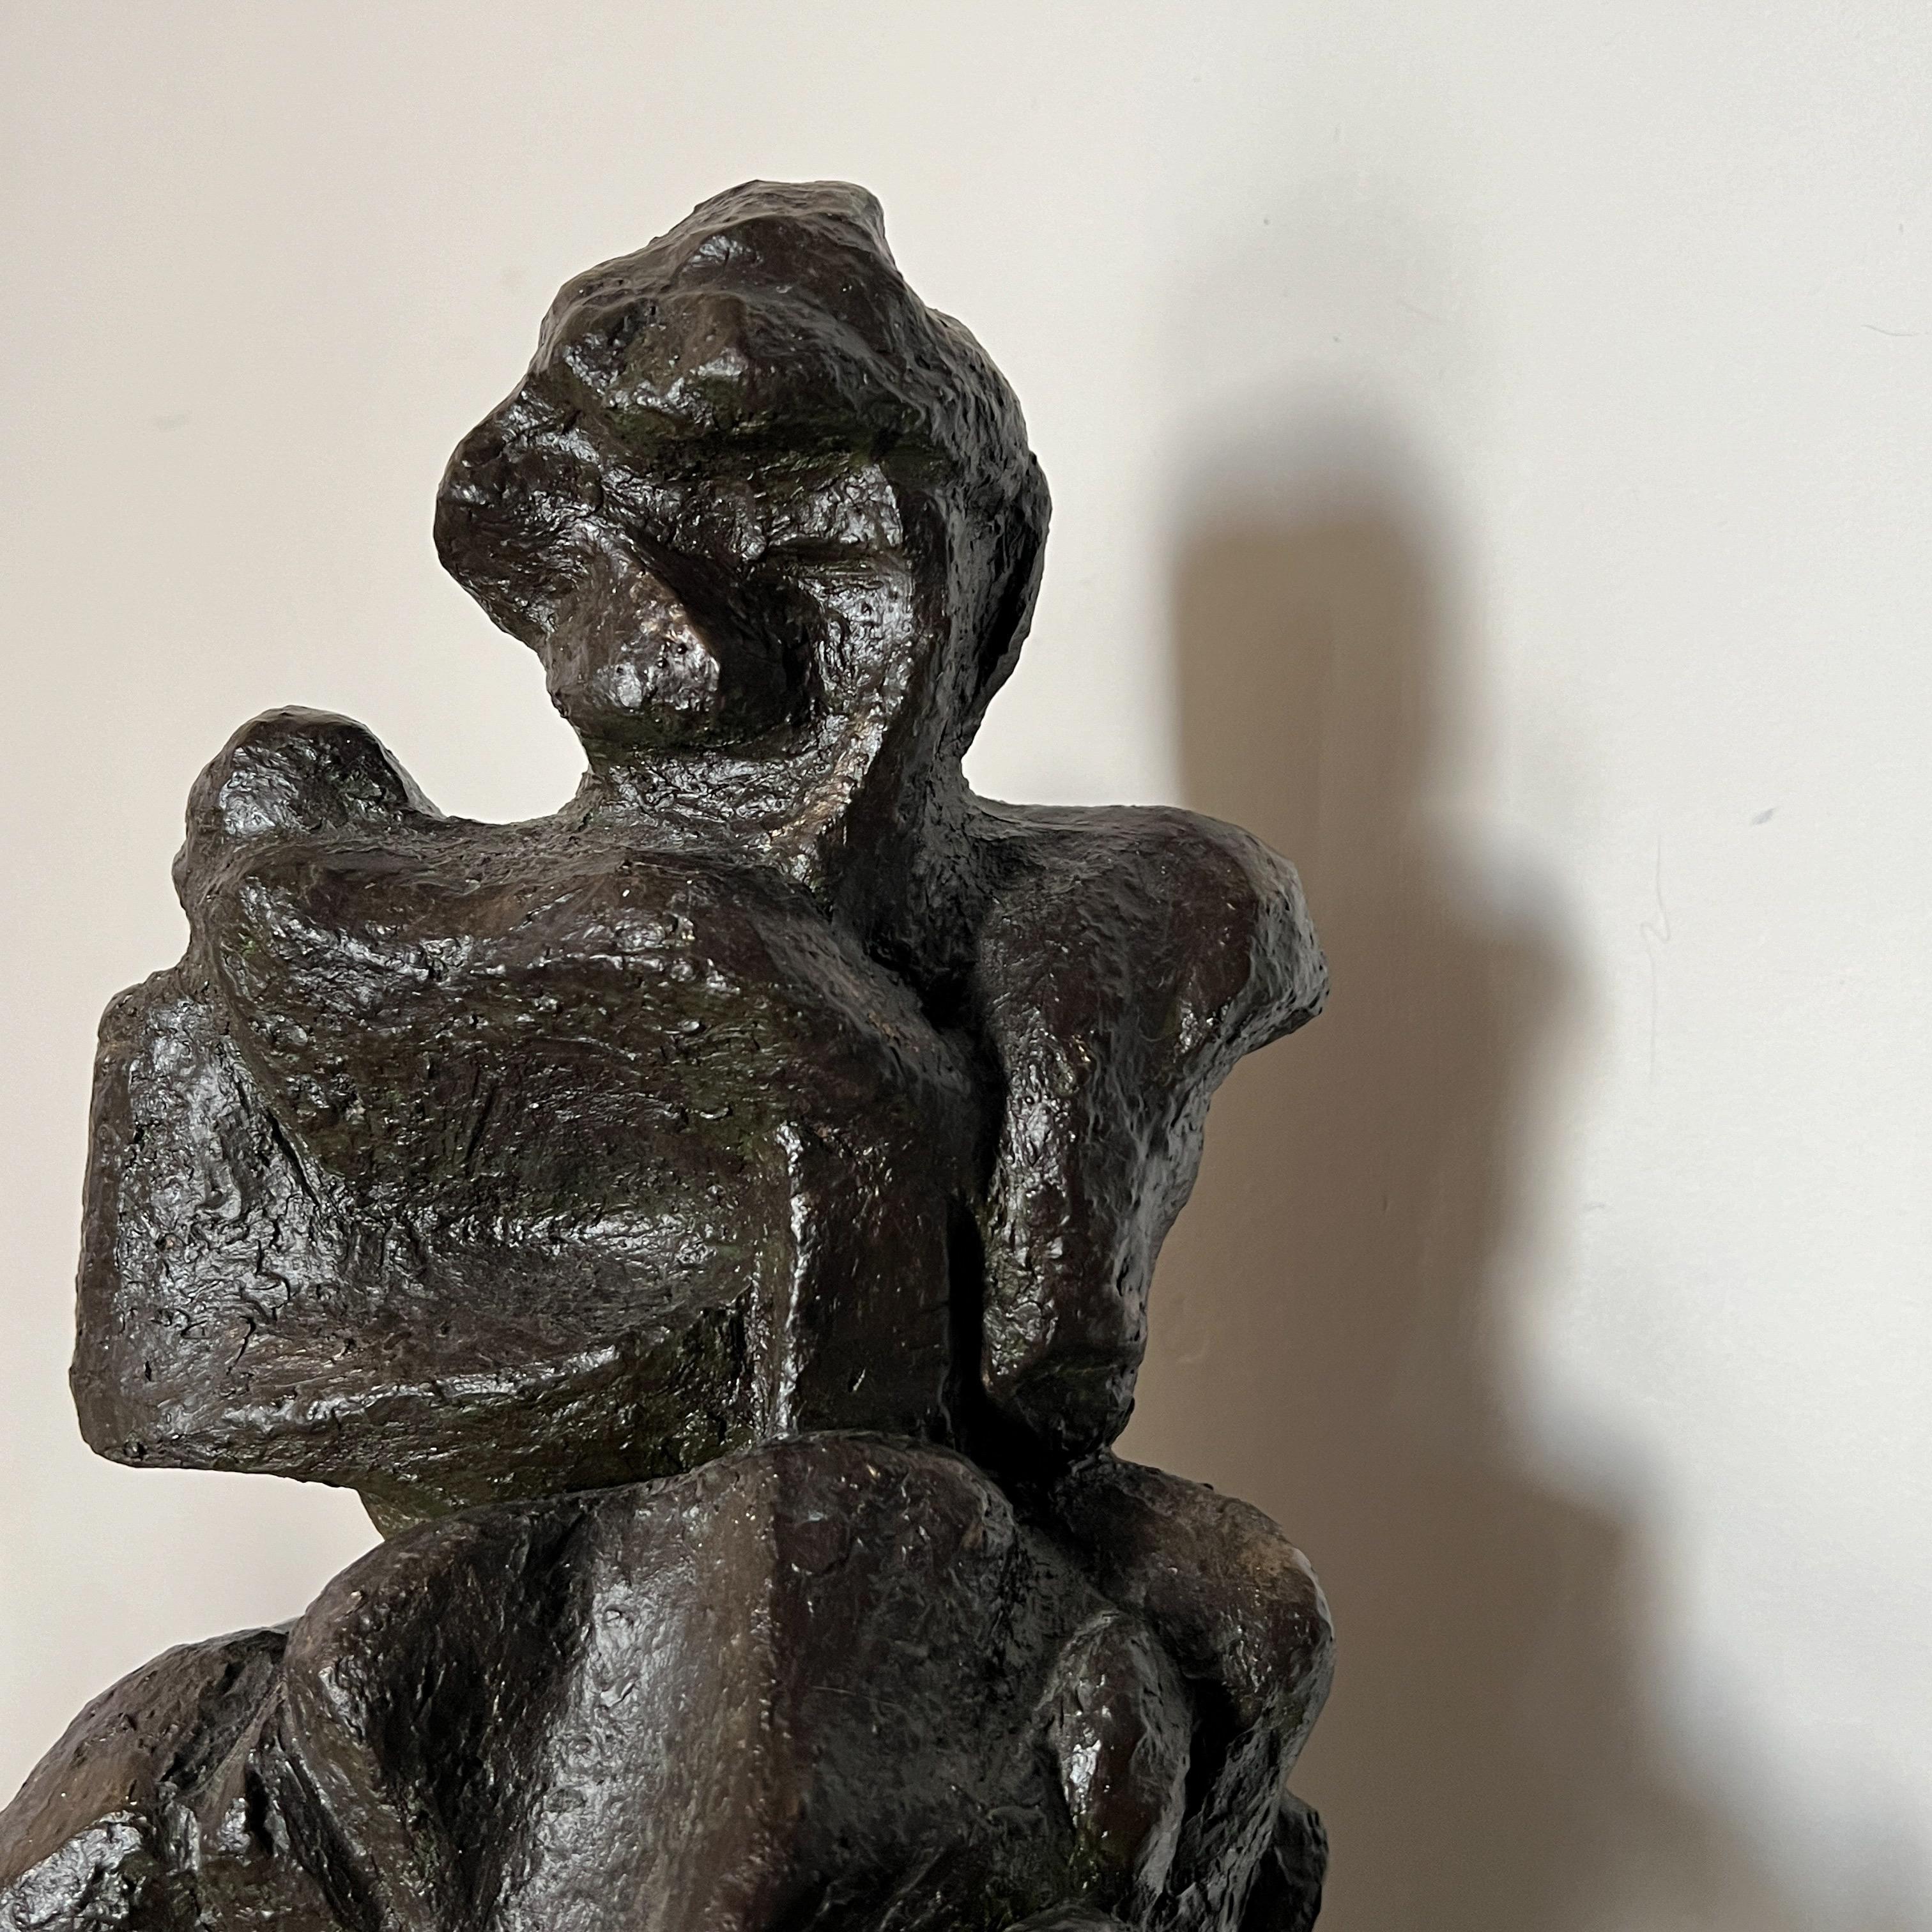 Große Keramikskulptur einer Figur im expressionistischen / brutalistischen Stil,
Diese Skulptur mit ihrer schwarzen Glasur und den rauen Texturen betont die starken abstrakten Formen einer menschlichen Figur.
Diese Skulptur mit ihren abgerundeten